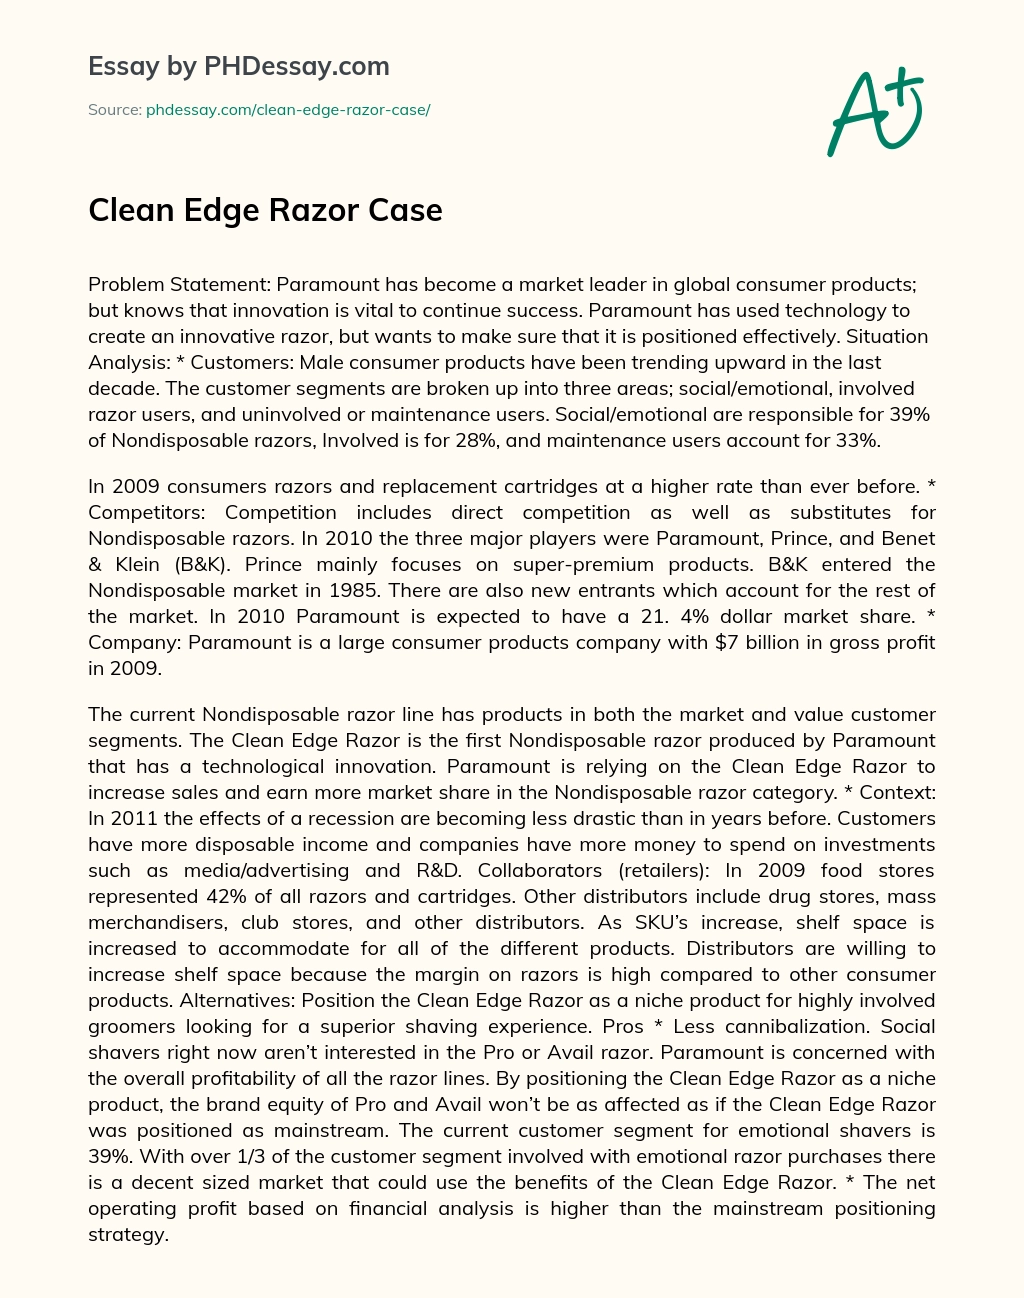 Clean Edge Razor Case essay